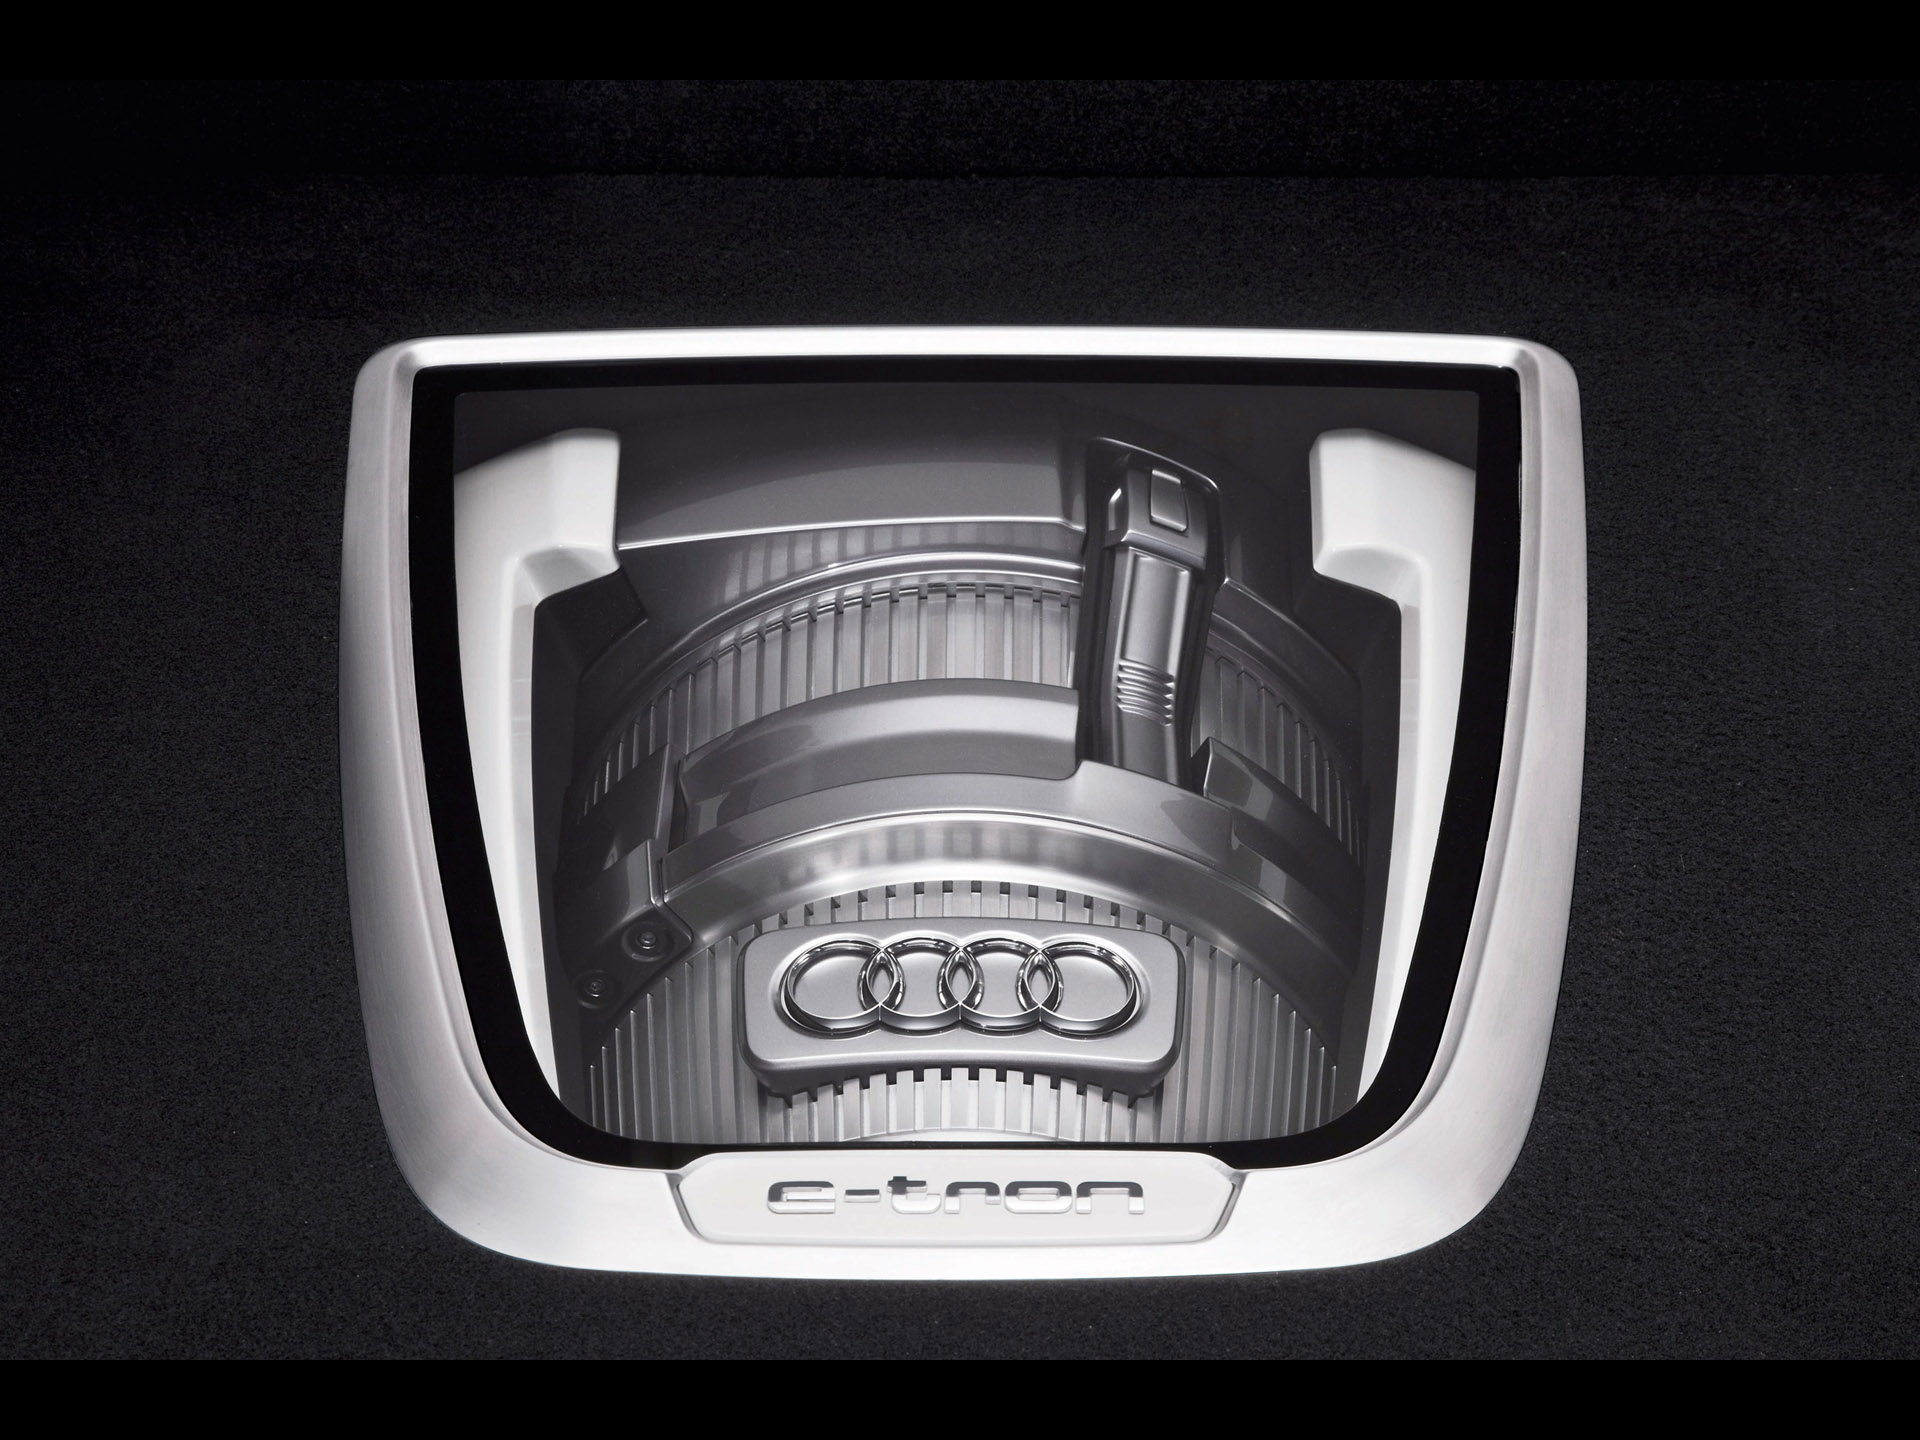 Audi A1 E Tron 2010 アウディに嵌まる 壁紙画像ブログ